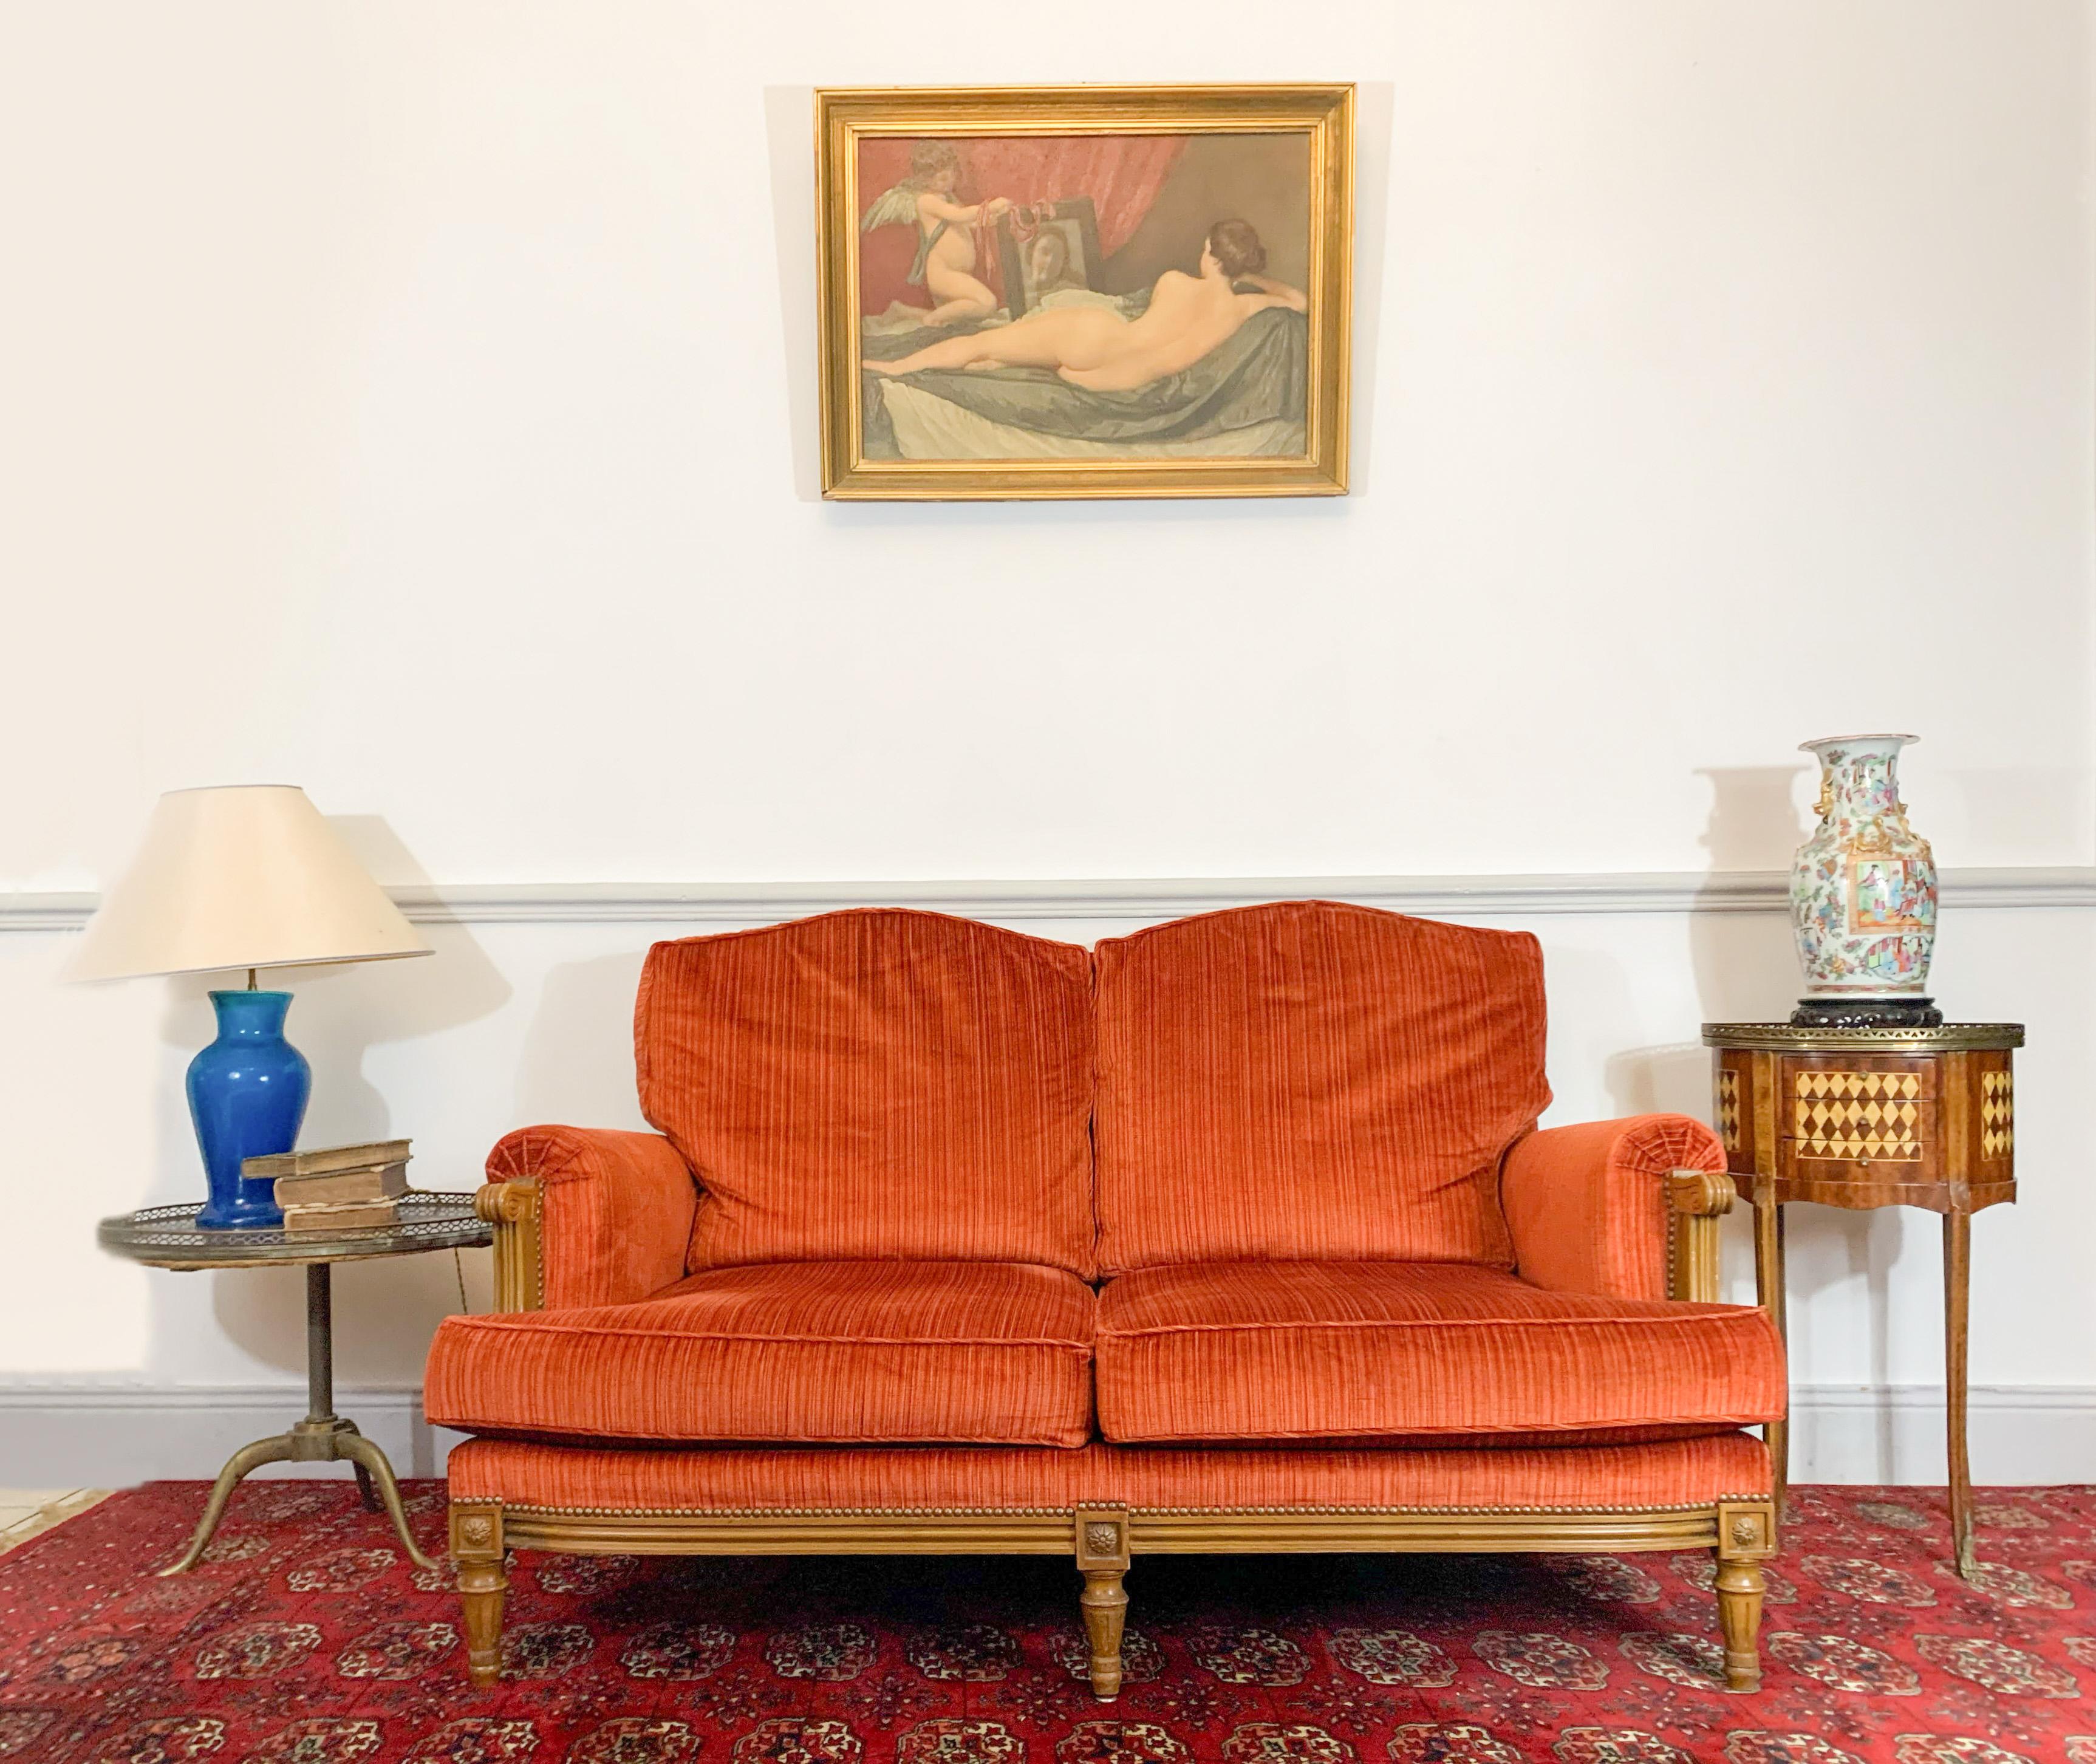 Joli canapé deux places de style Louis XVI. La base du carquois est cannelée. Des motifs floraux sont présents sur les dés de liaison. Les accoudoirs sont en forme de volutes. L'ensemble est recouvert de velours côtelé orange. 
2Oème siècle.